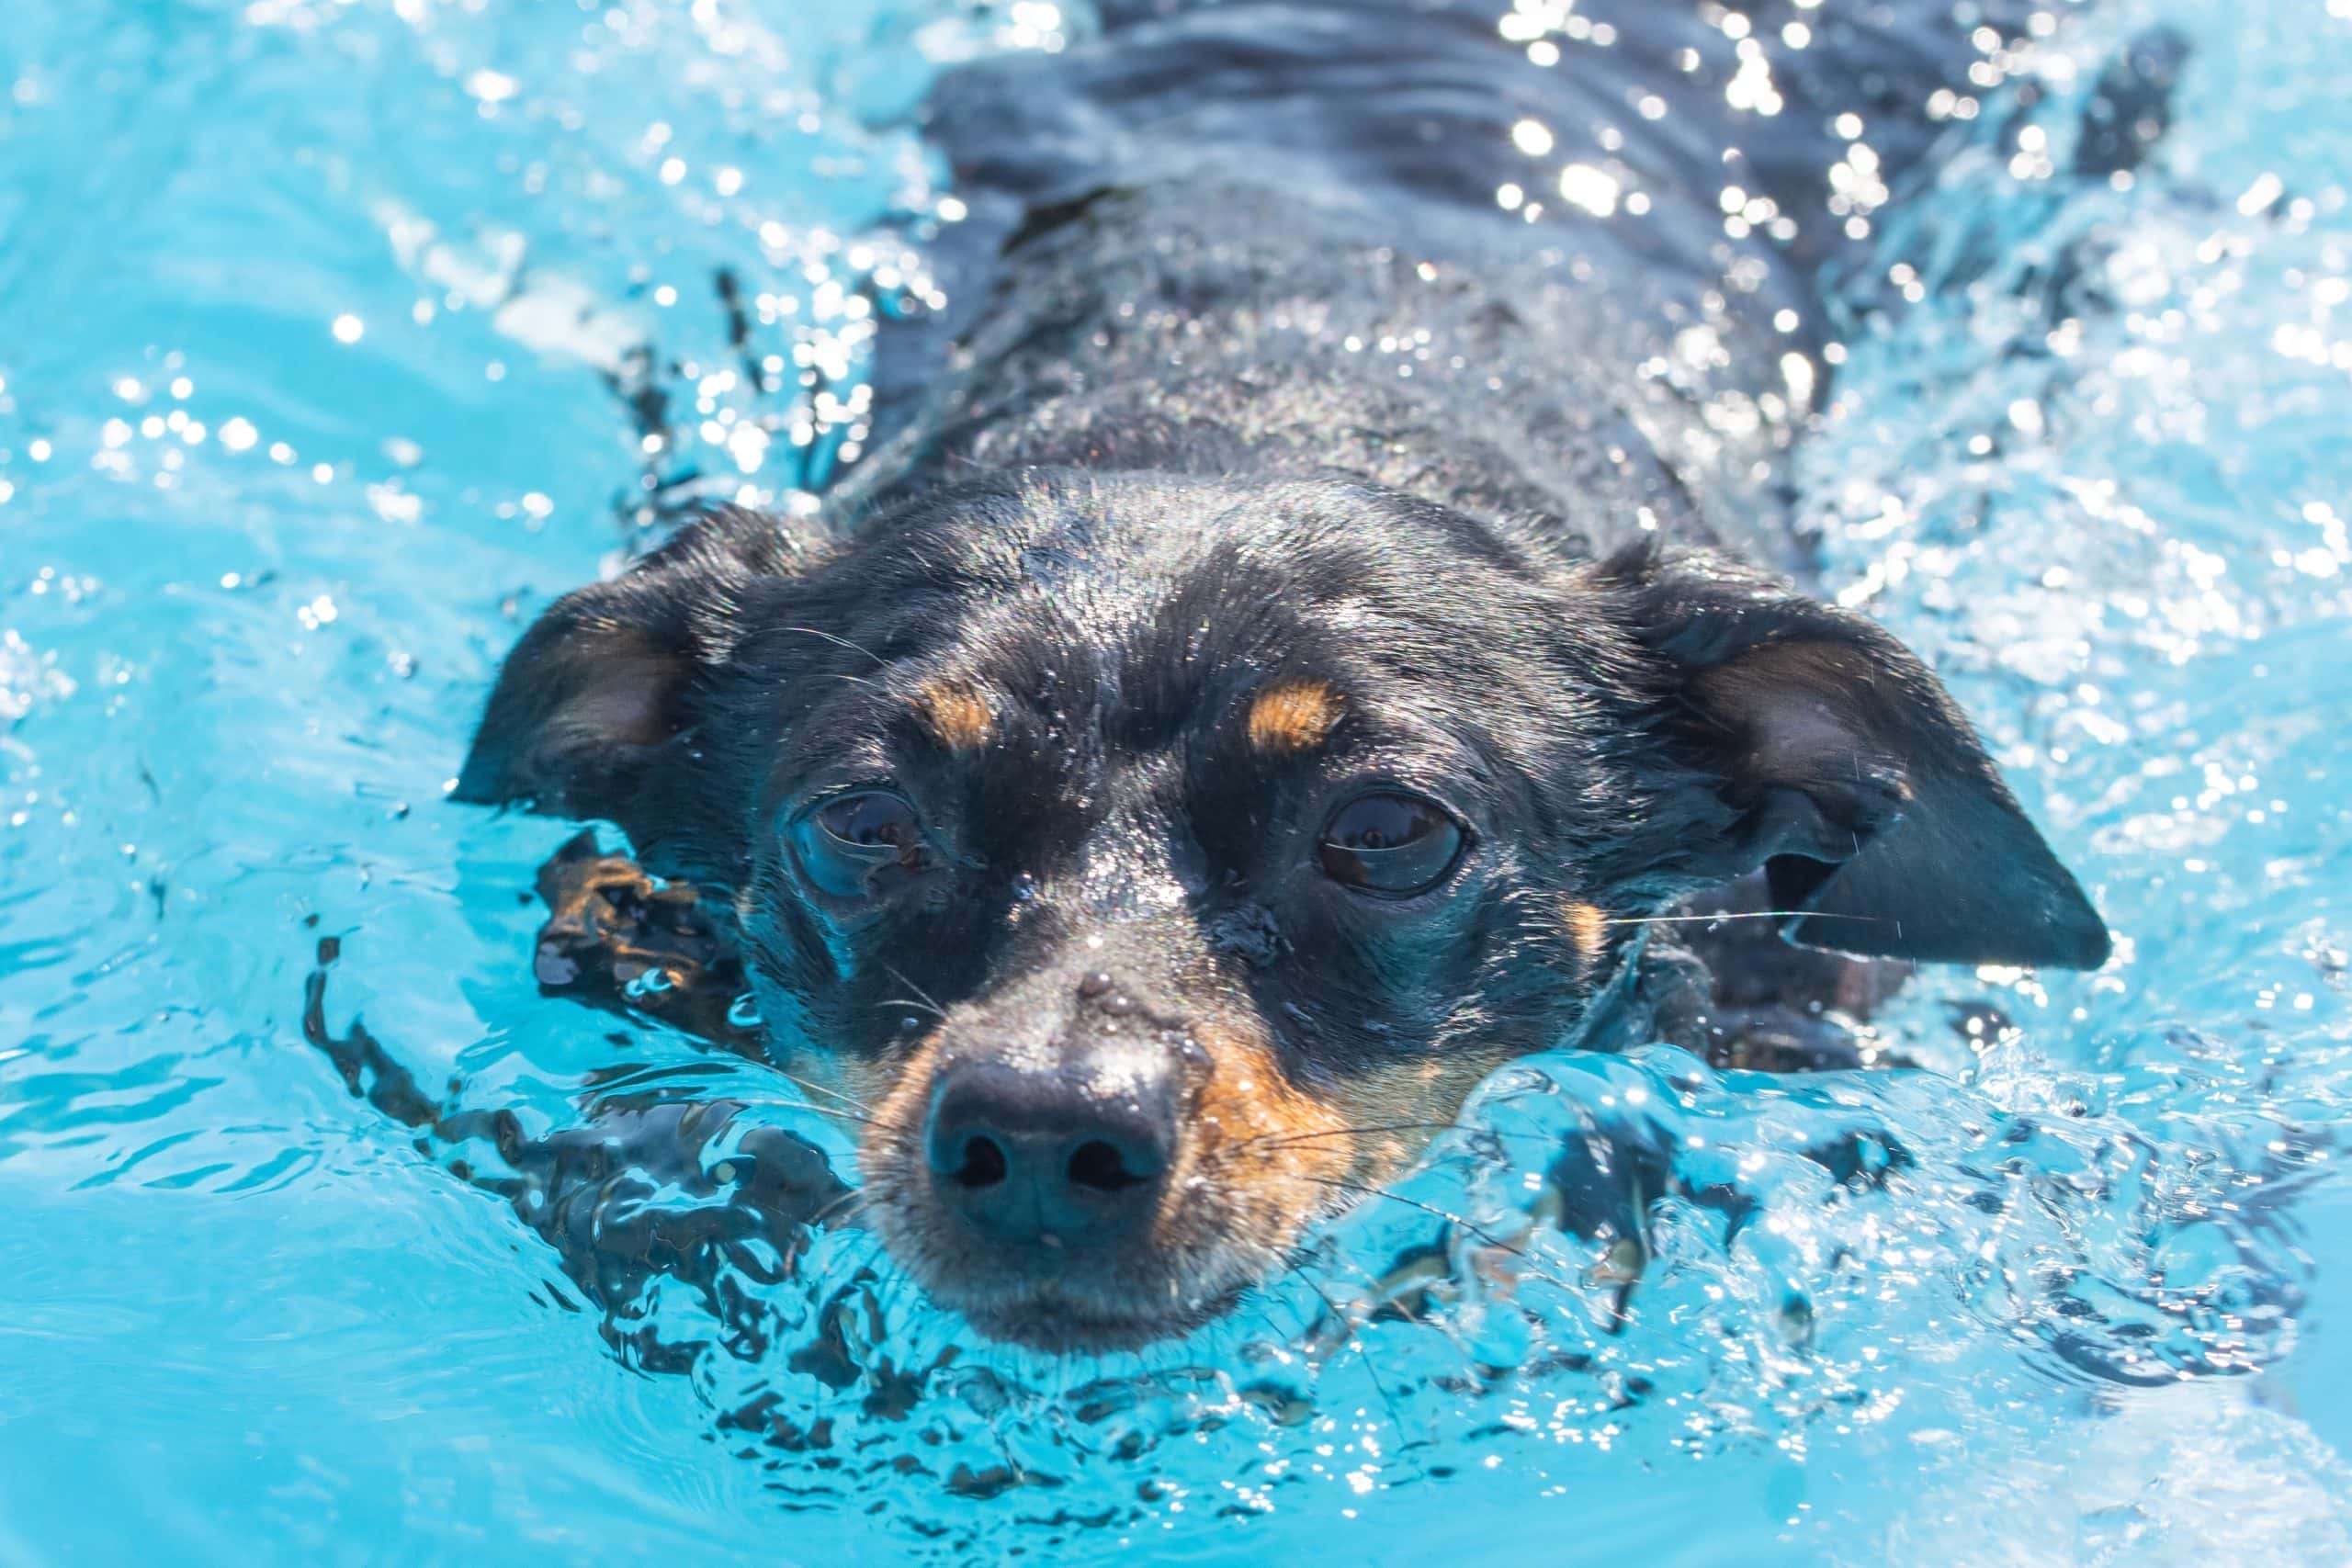 King rat swimming dog